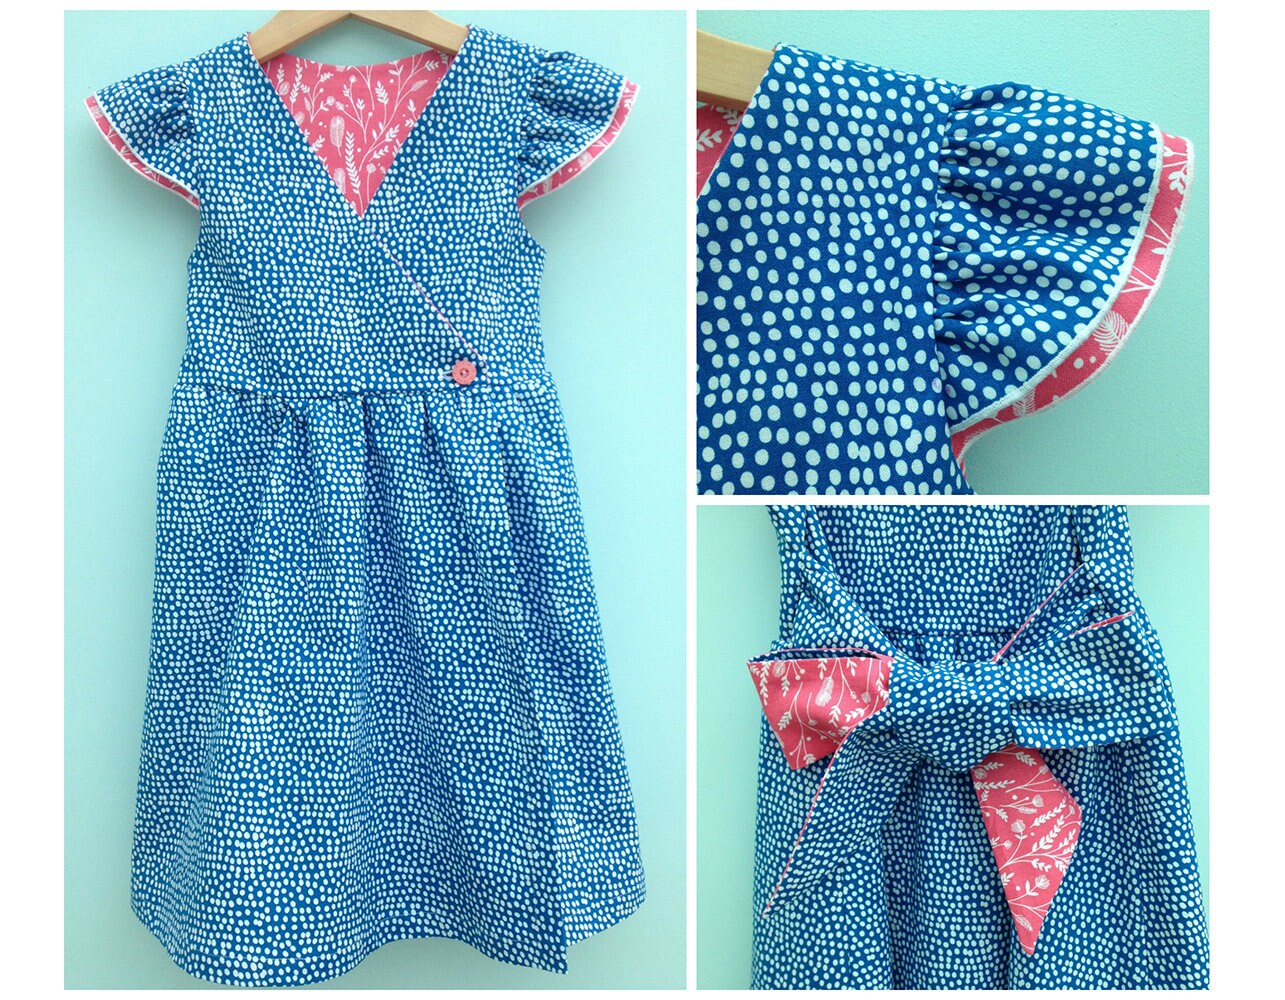 FAIRY Girl Dress pattern Pdf sewing Flutter Sleeve Dress | Etsy